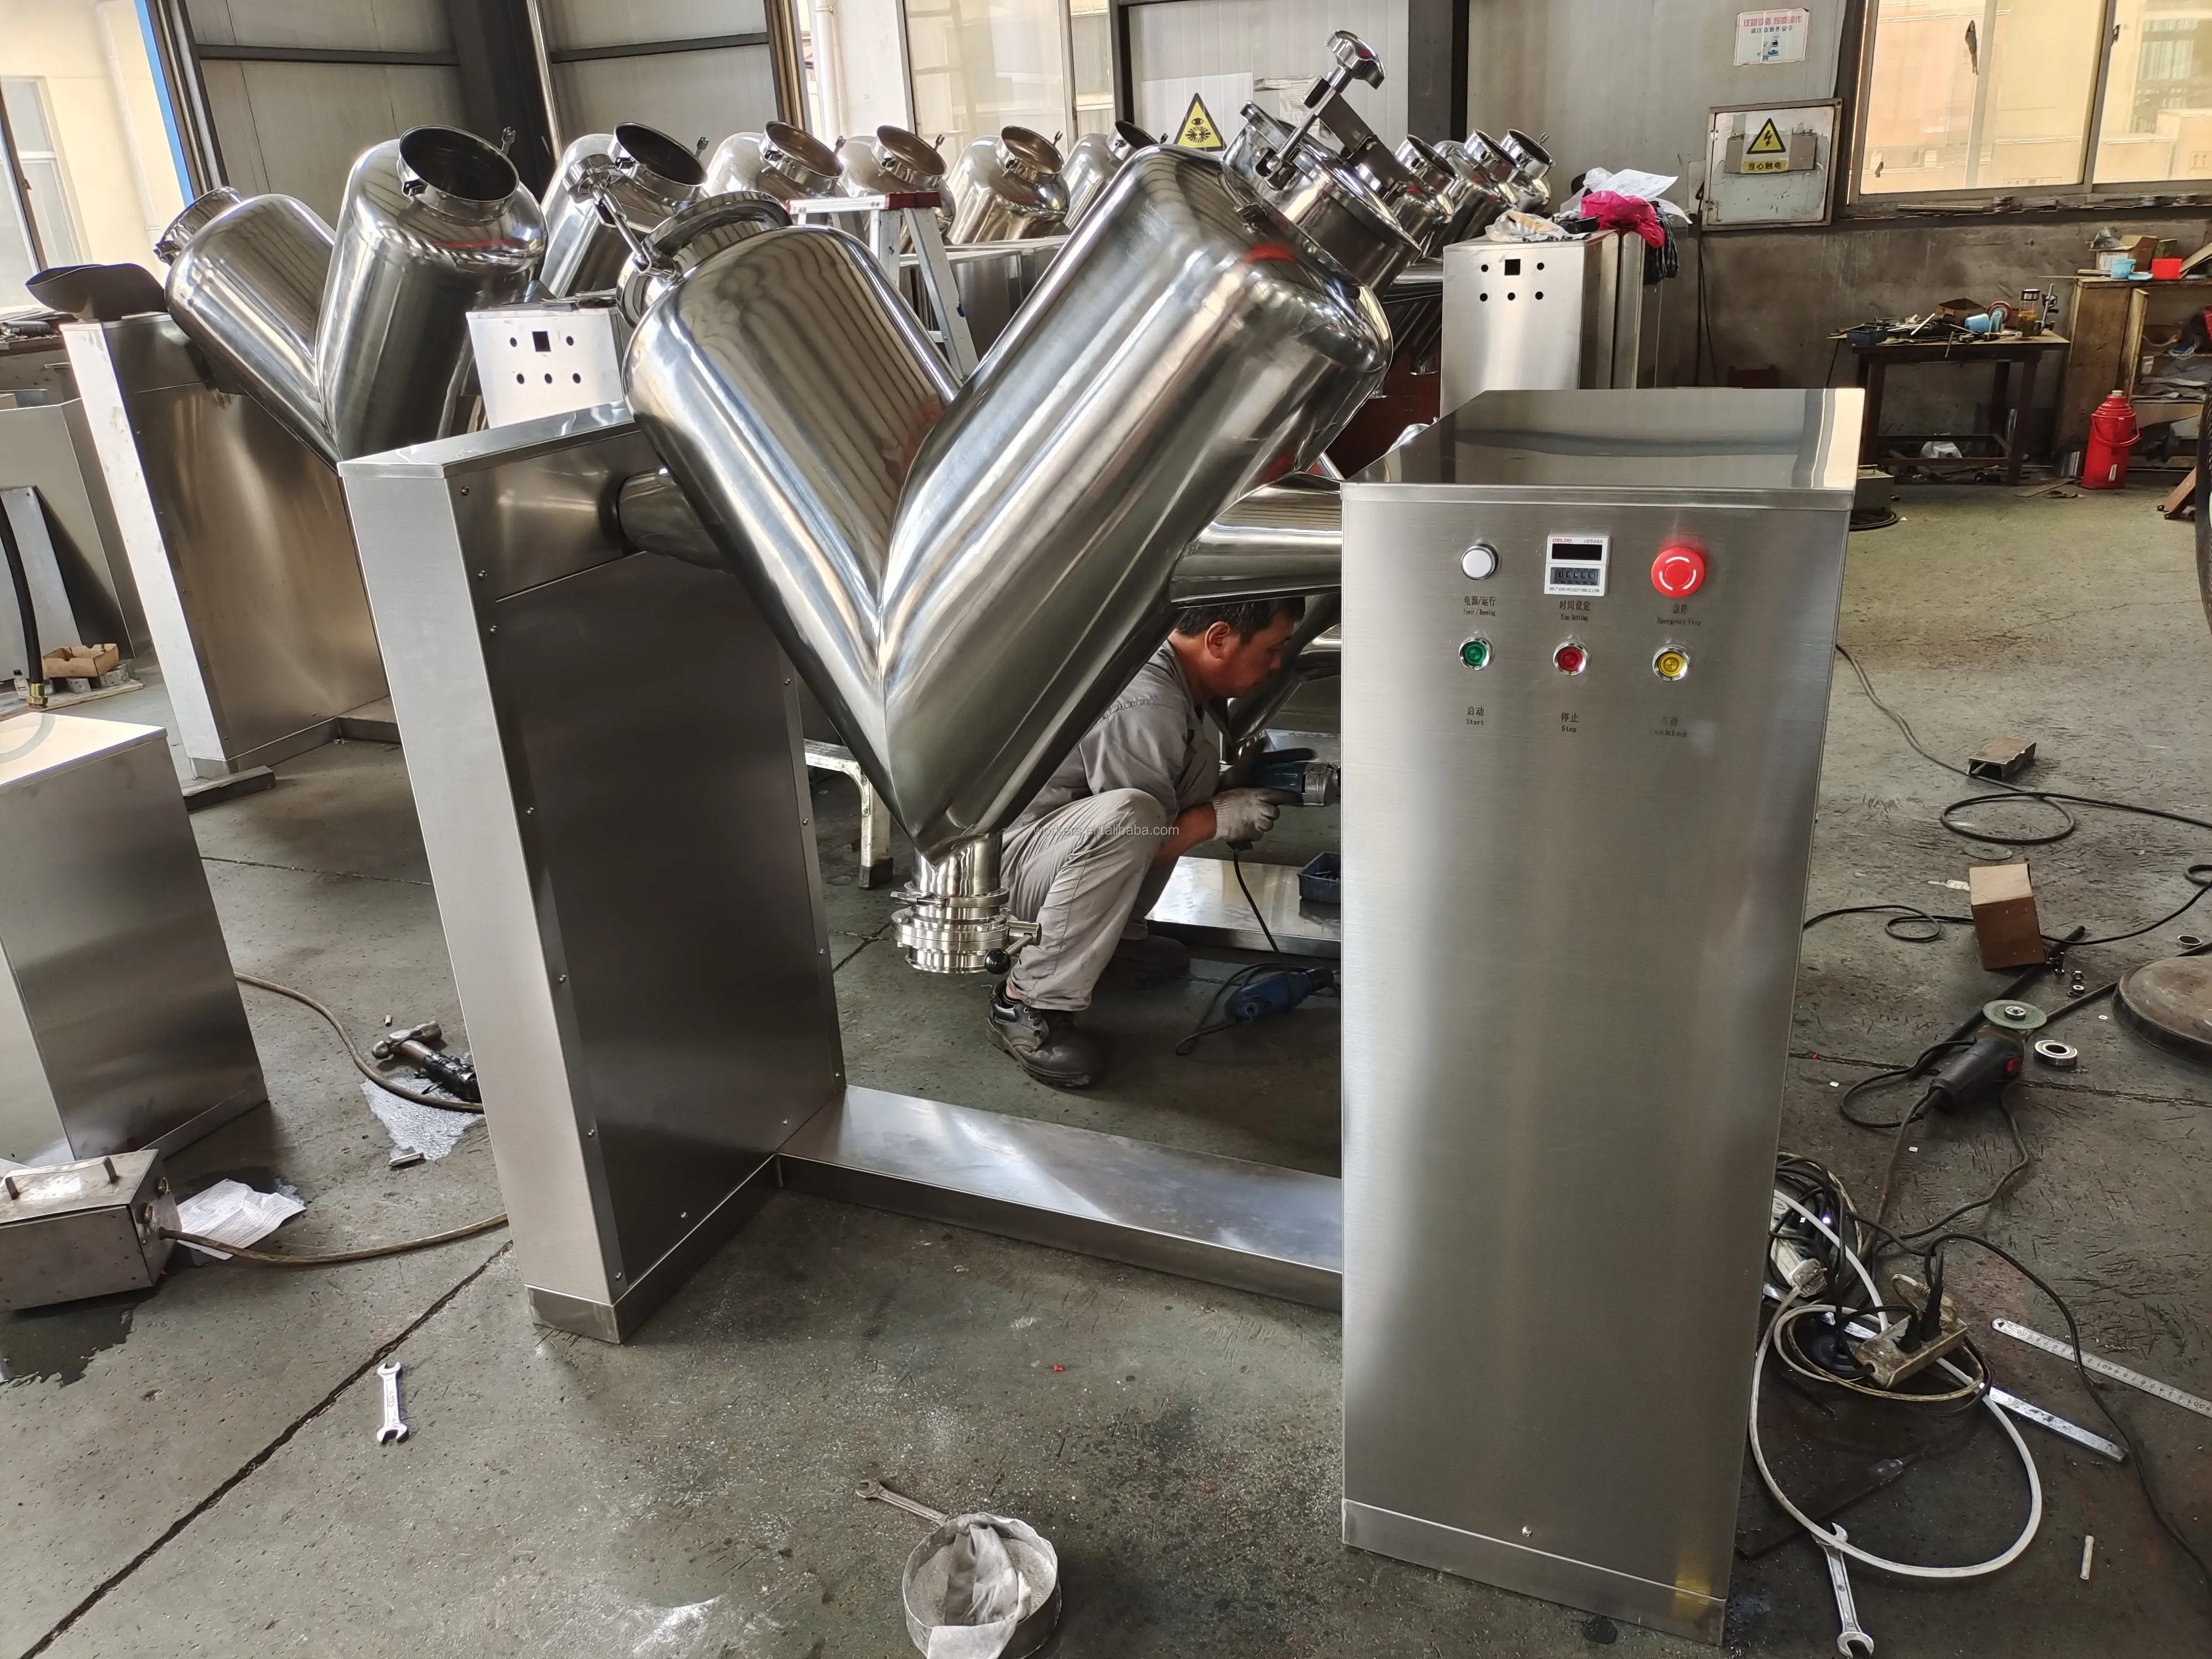 Industriale in acciaio inox miscelazione ad alta velocità di miscelazione cibo polvere Mixer macchina V frullatori con spruzzatore